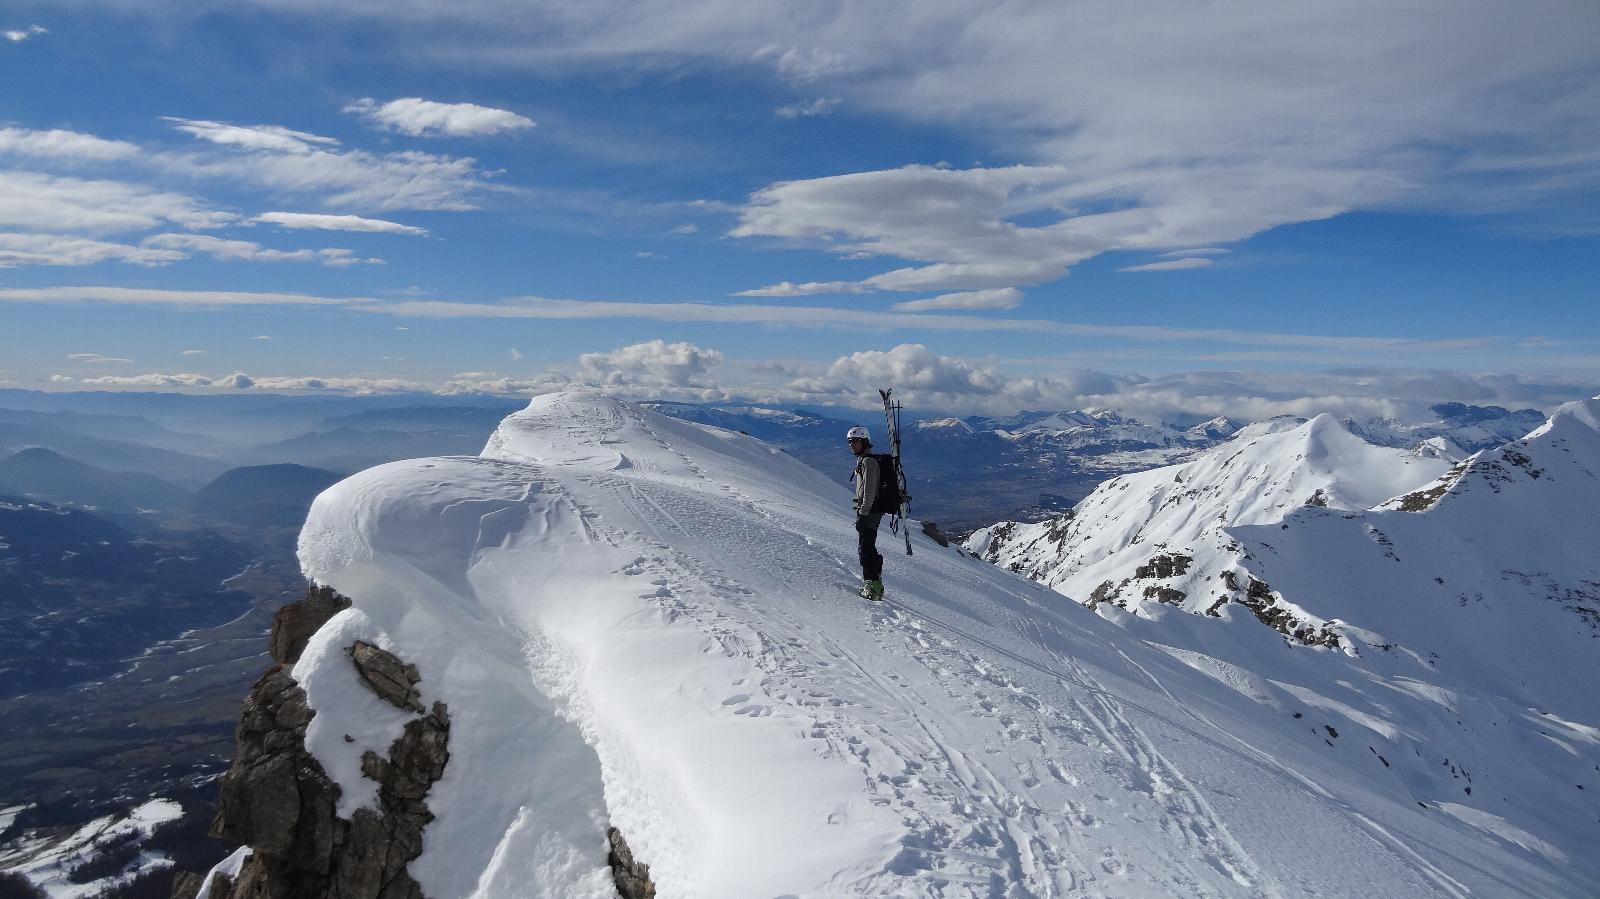 Les 10 meilleurs crampons pour faire de la randonnée hivernale